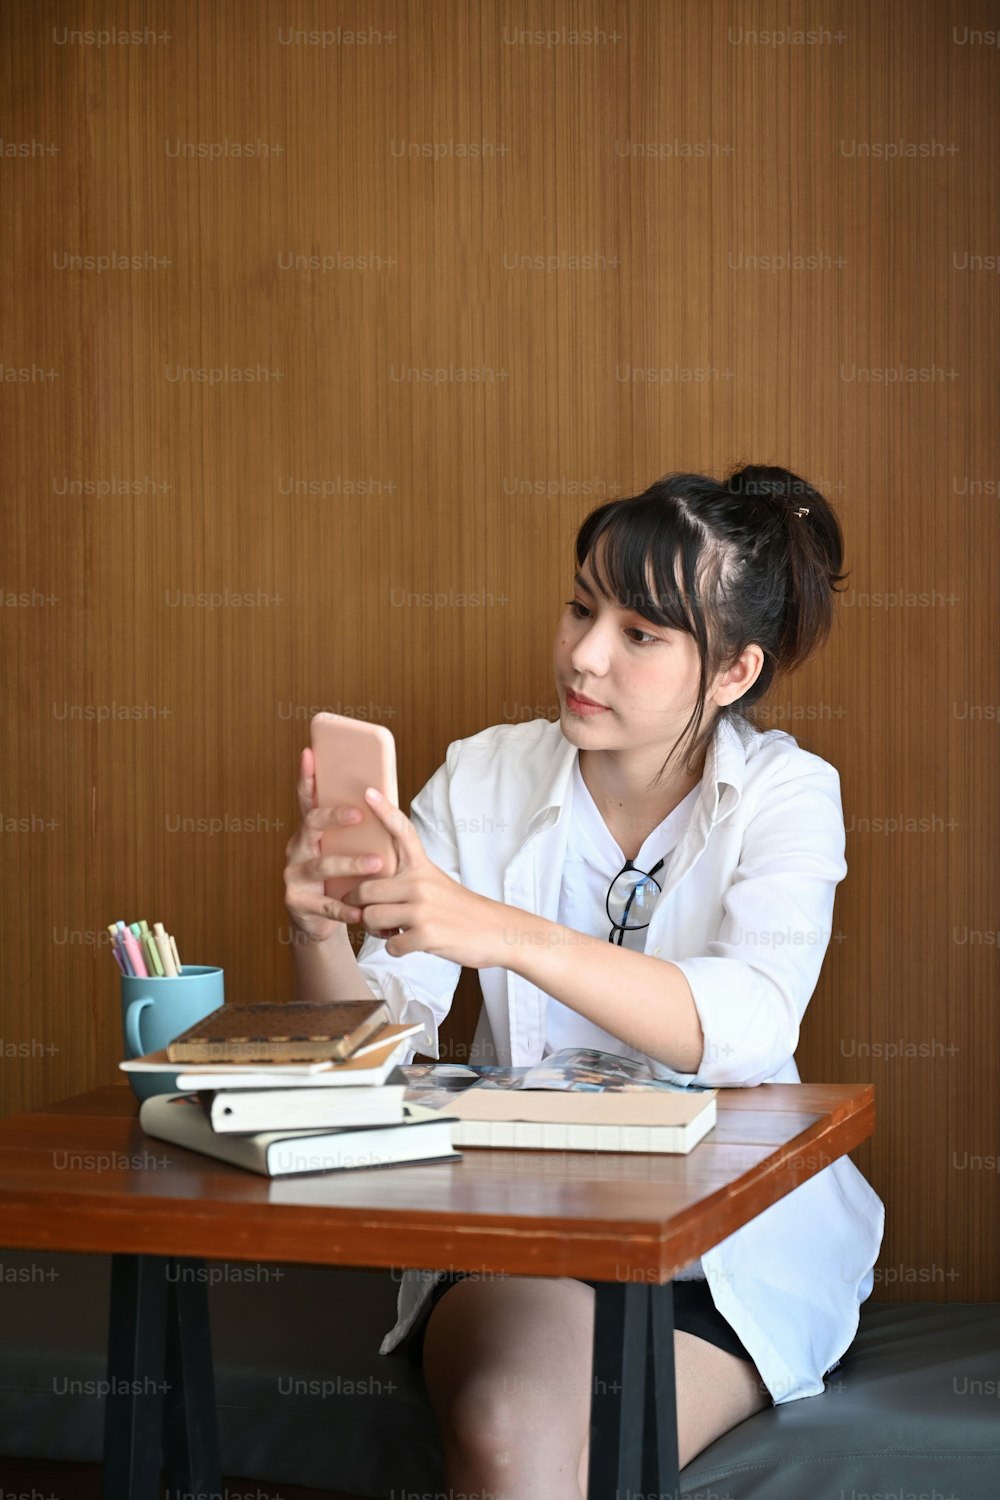 Ritratto di giovane donna in abiti casual seduta in caffè e usando il telefono cellulare.